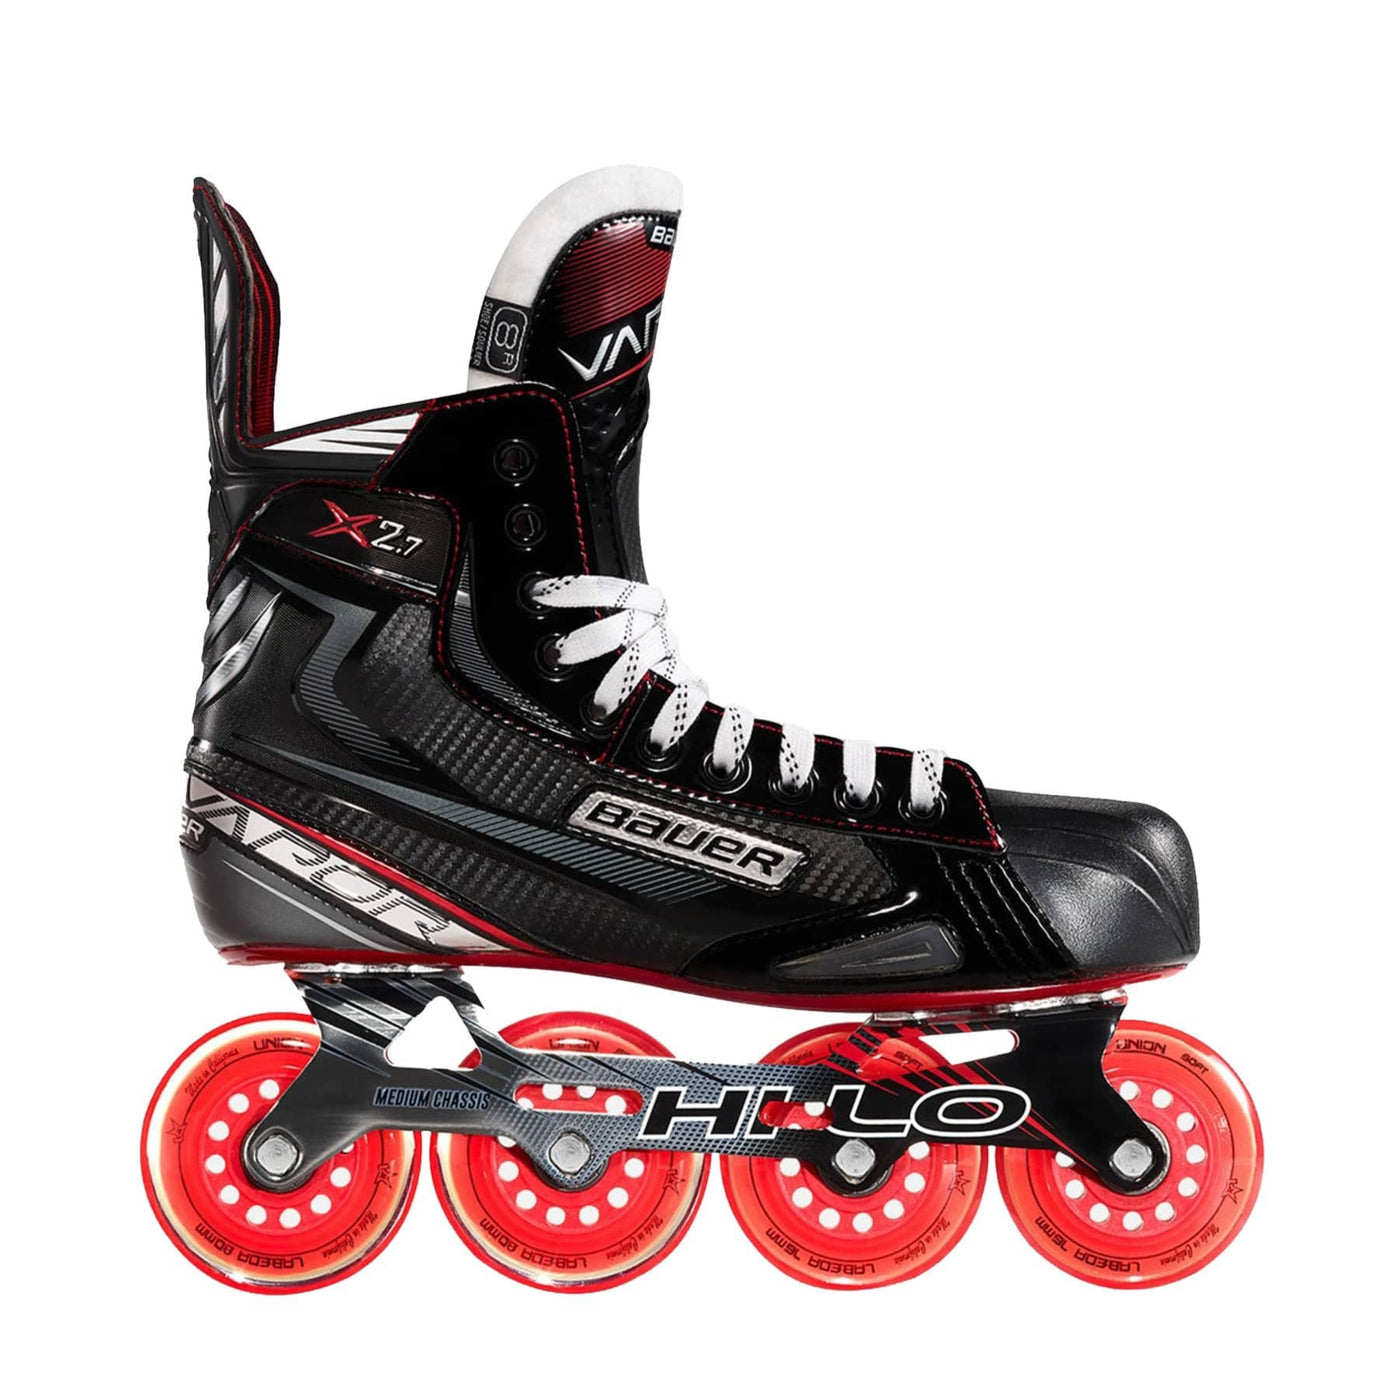 Bauer Vapor X2.7R Junior Roller Hockey Skates